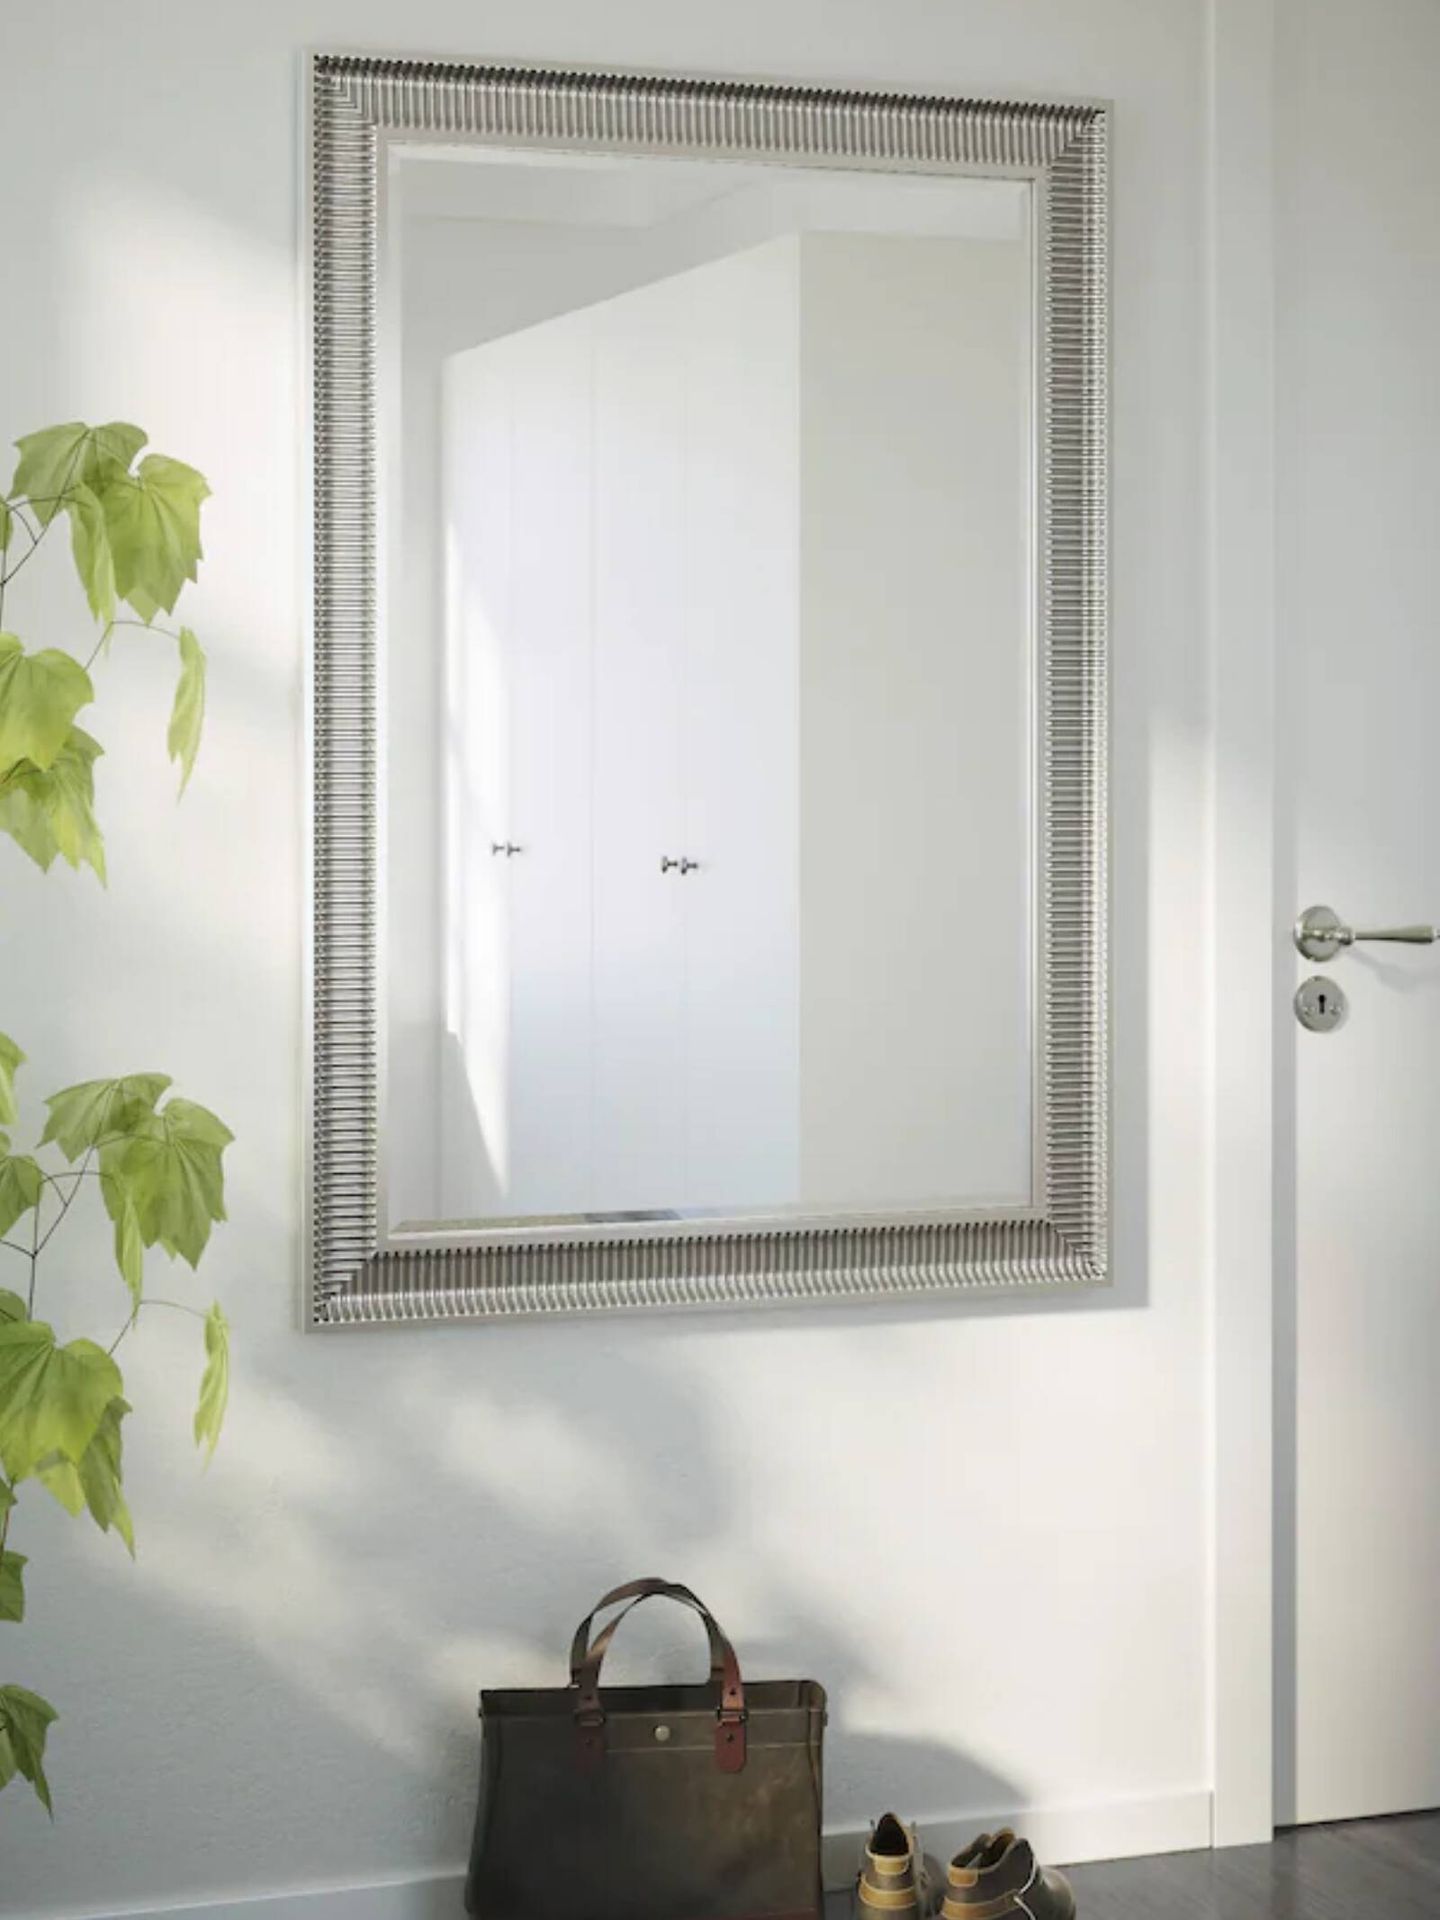 Espejos de Ikea para baños pequeños. (Cortesía)